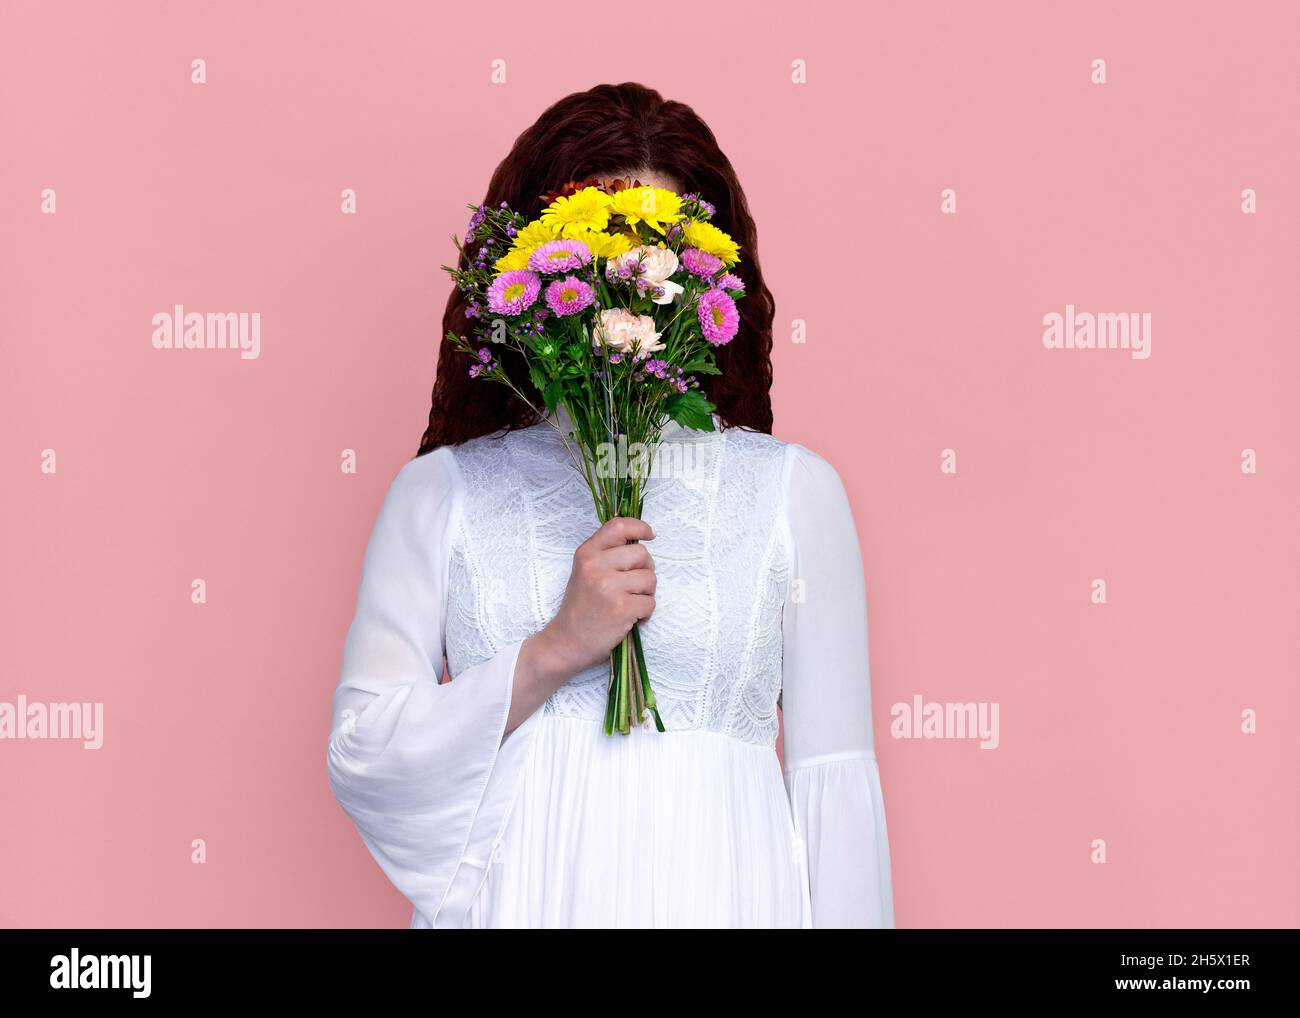 Frau mit Blumenstrauß vor dem Gesicht auf rosa Hintergrund. Studioportrait einer verspielten Frau, die Blumenstrauß vor ihrem Gesicht hält. Stockfoto